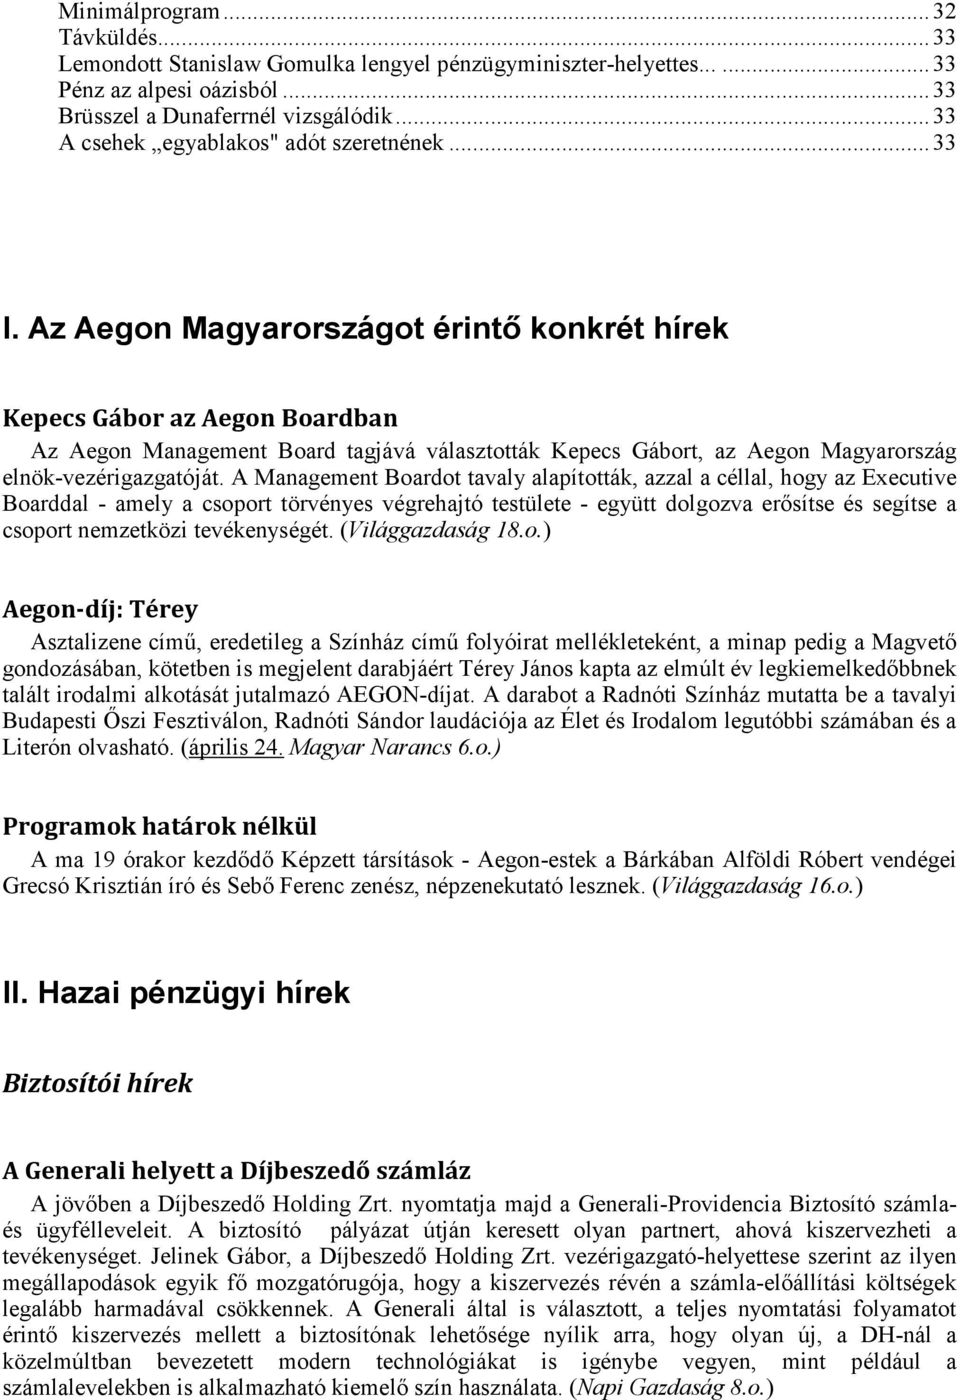 Az Aegon Magyarországot érintő konkrét hírek Kepecs Gábor az Aegon Boardban Az Aegon Management Board tagjává választották Kepecs Gábort, az Aegon Magyarország elnök-vezérigazgatóját.